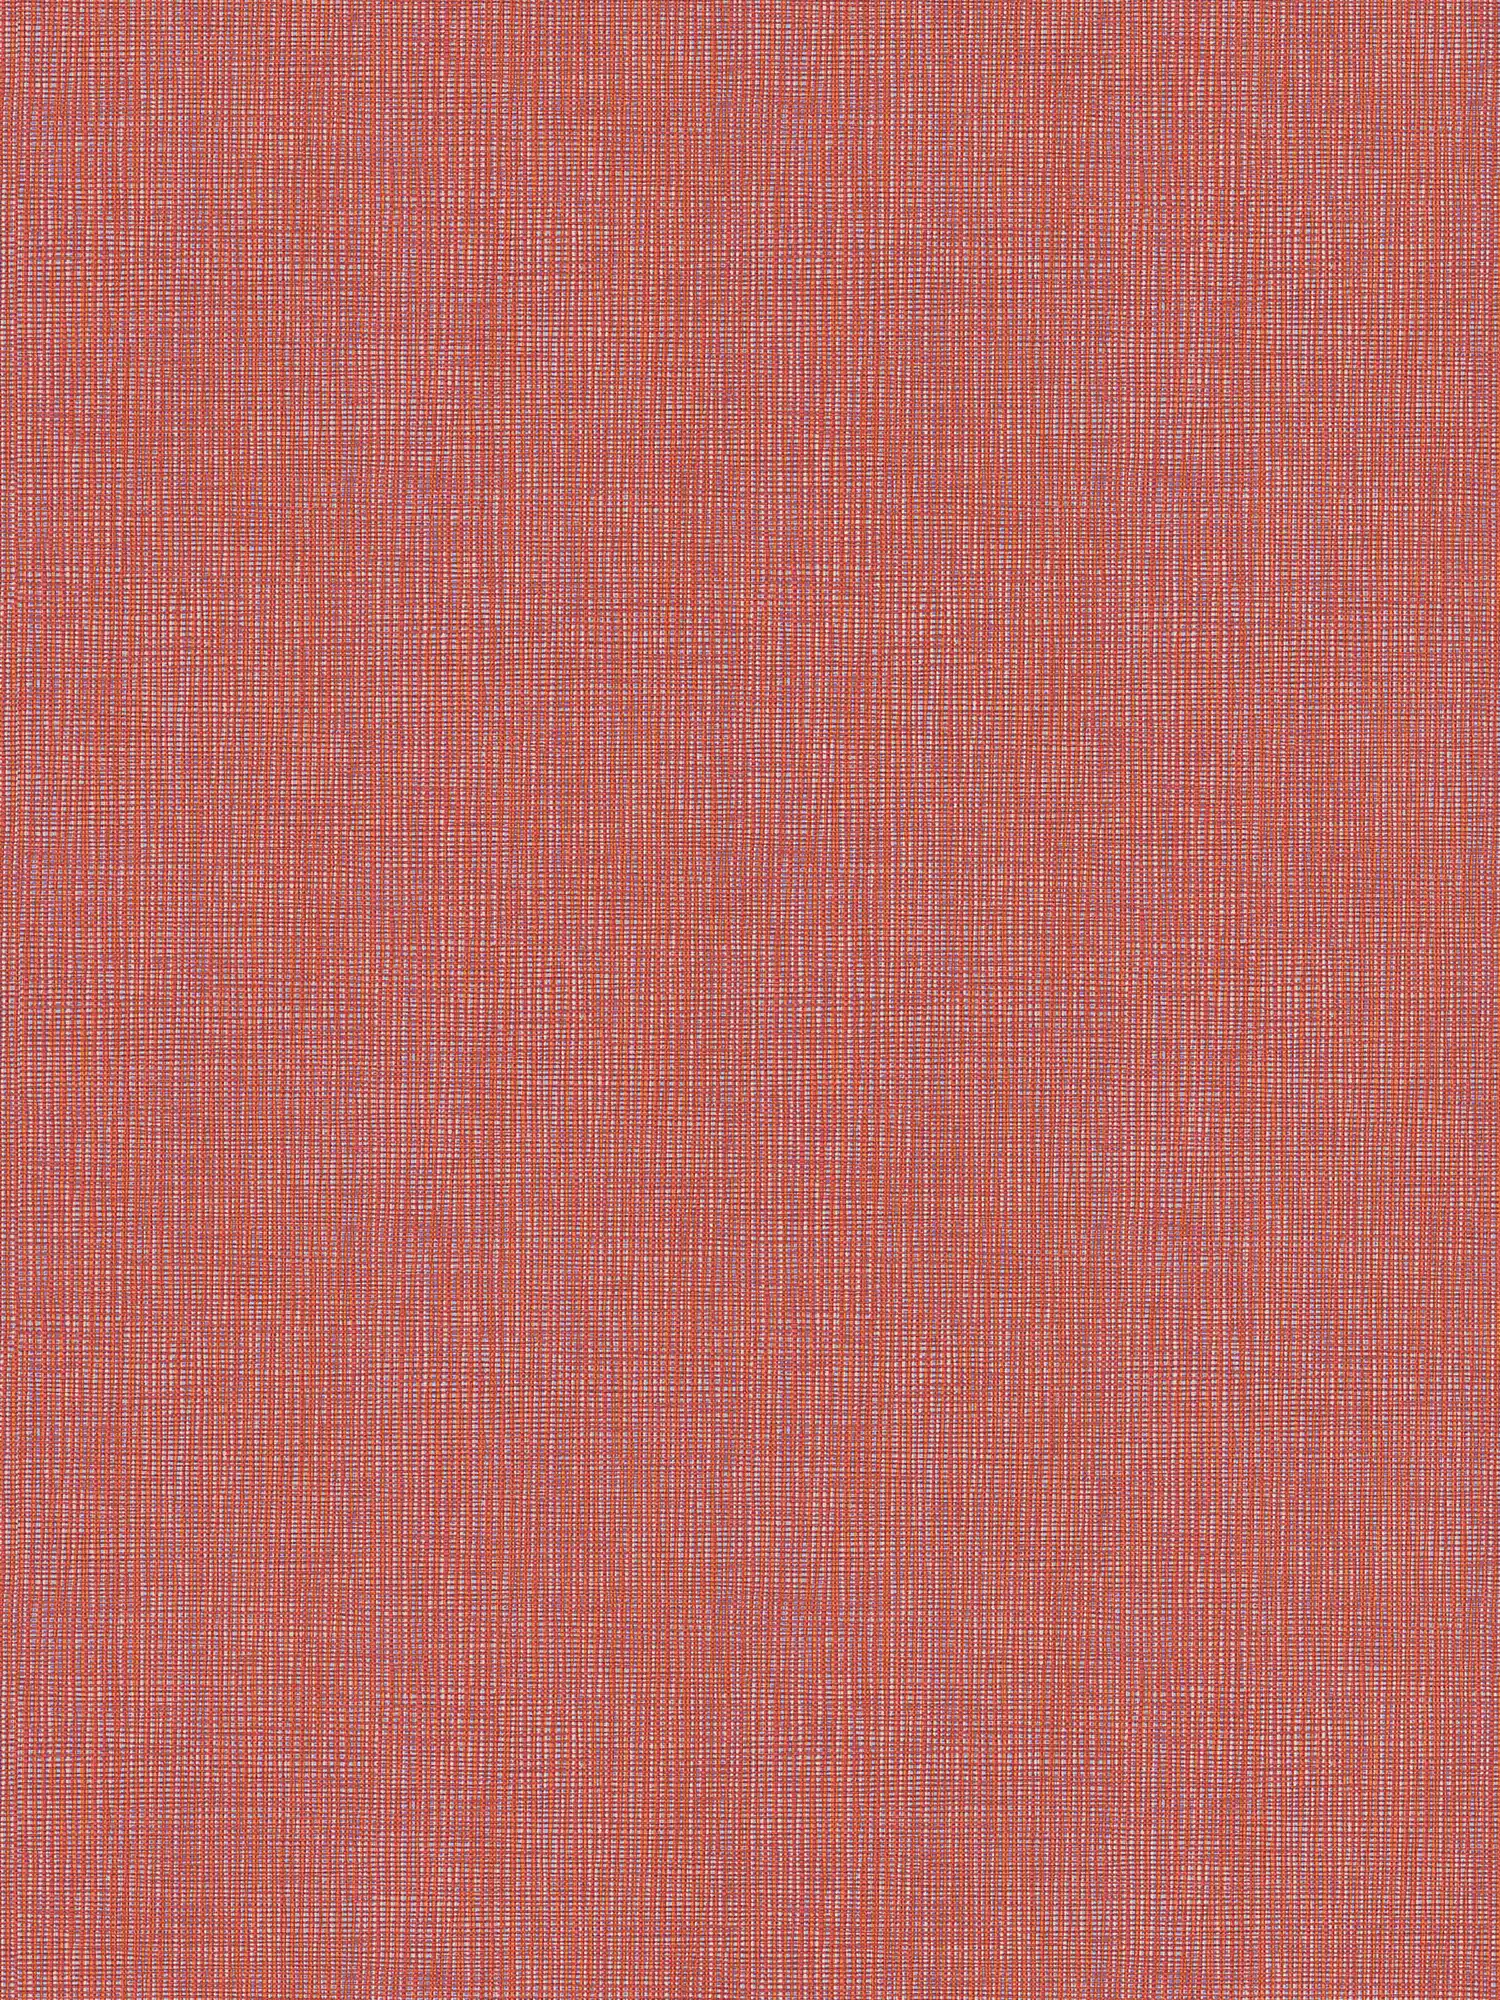 Papel pintado rojo con estampado textil en rojo, naranja y morado
